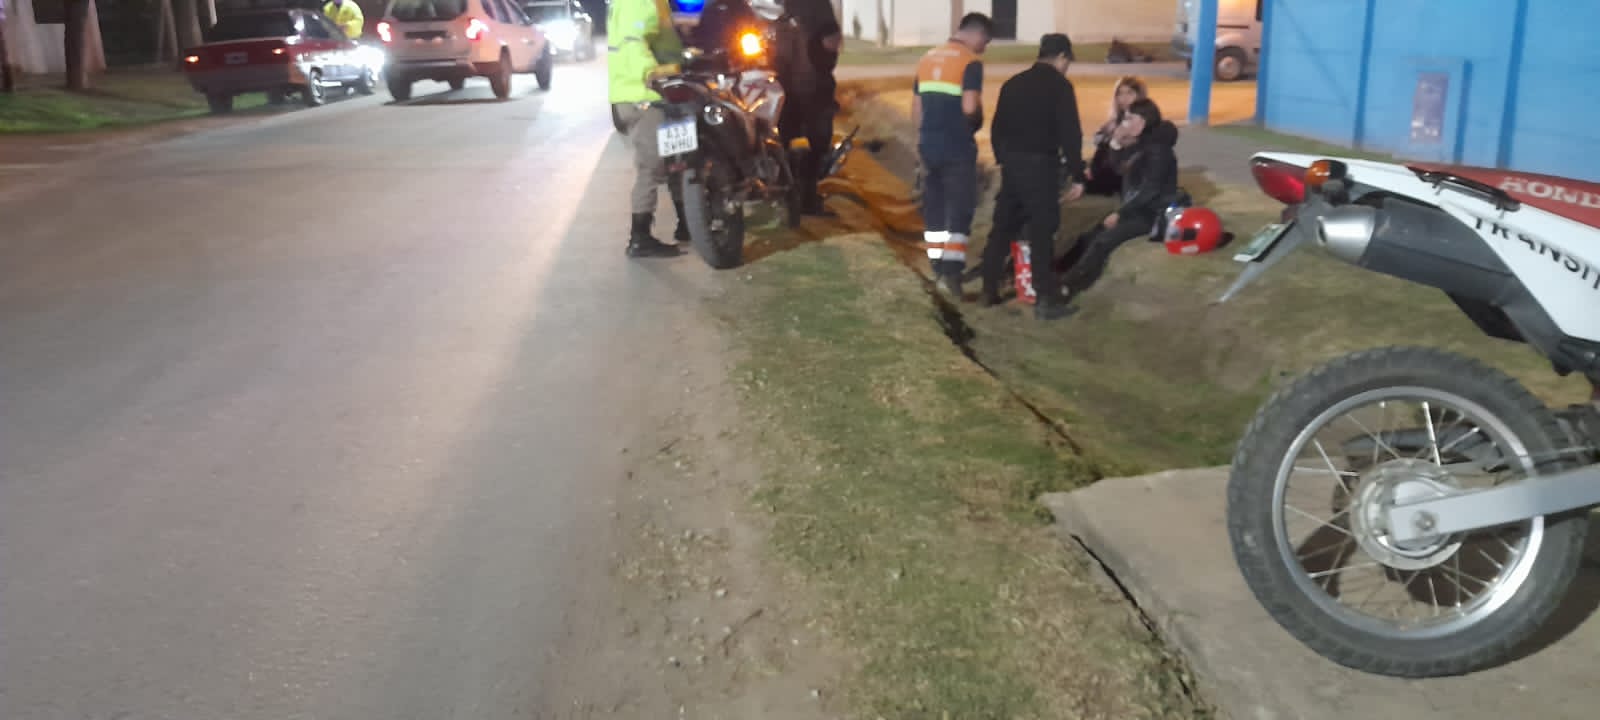 Una motociclista impactó contra un auto y protagonizaron un fuerte accidente